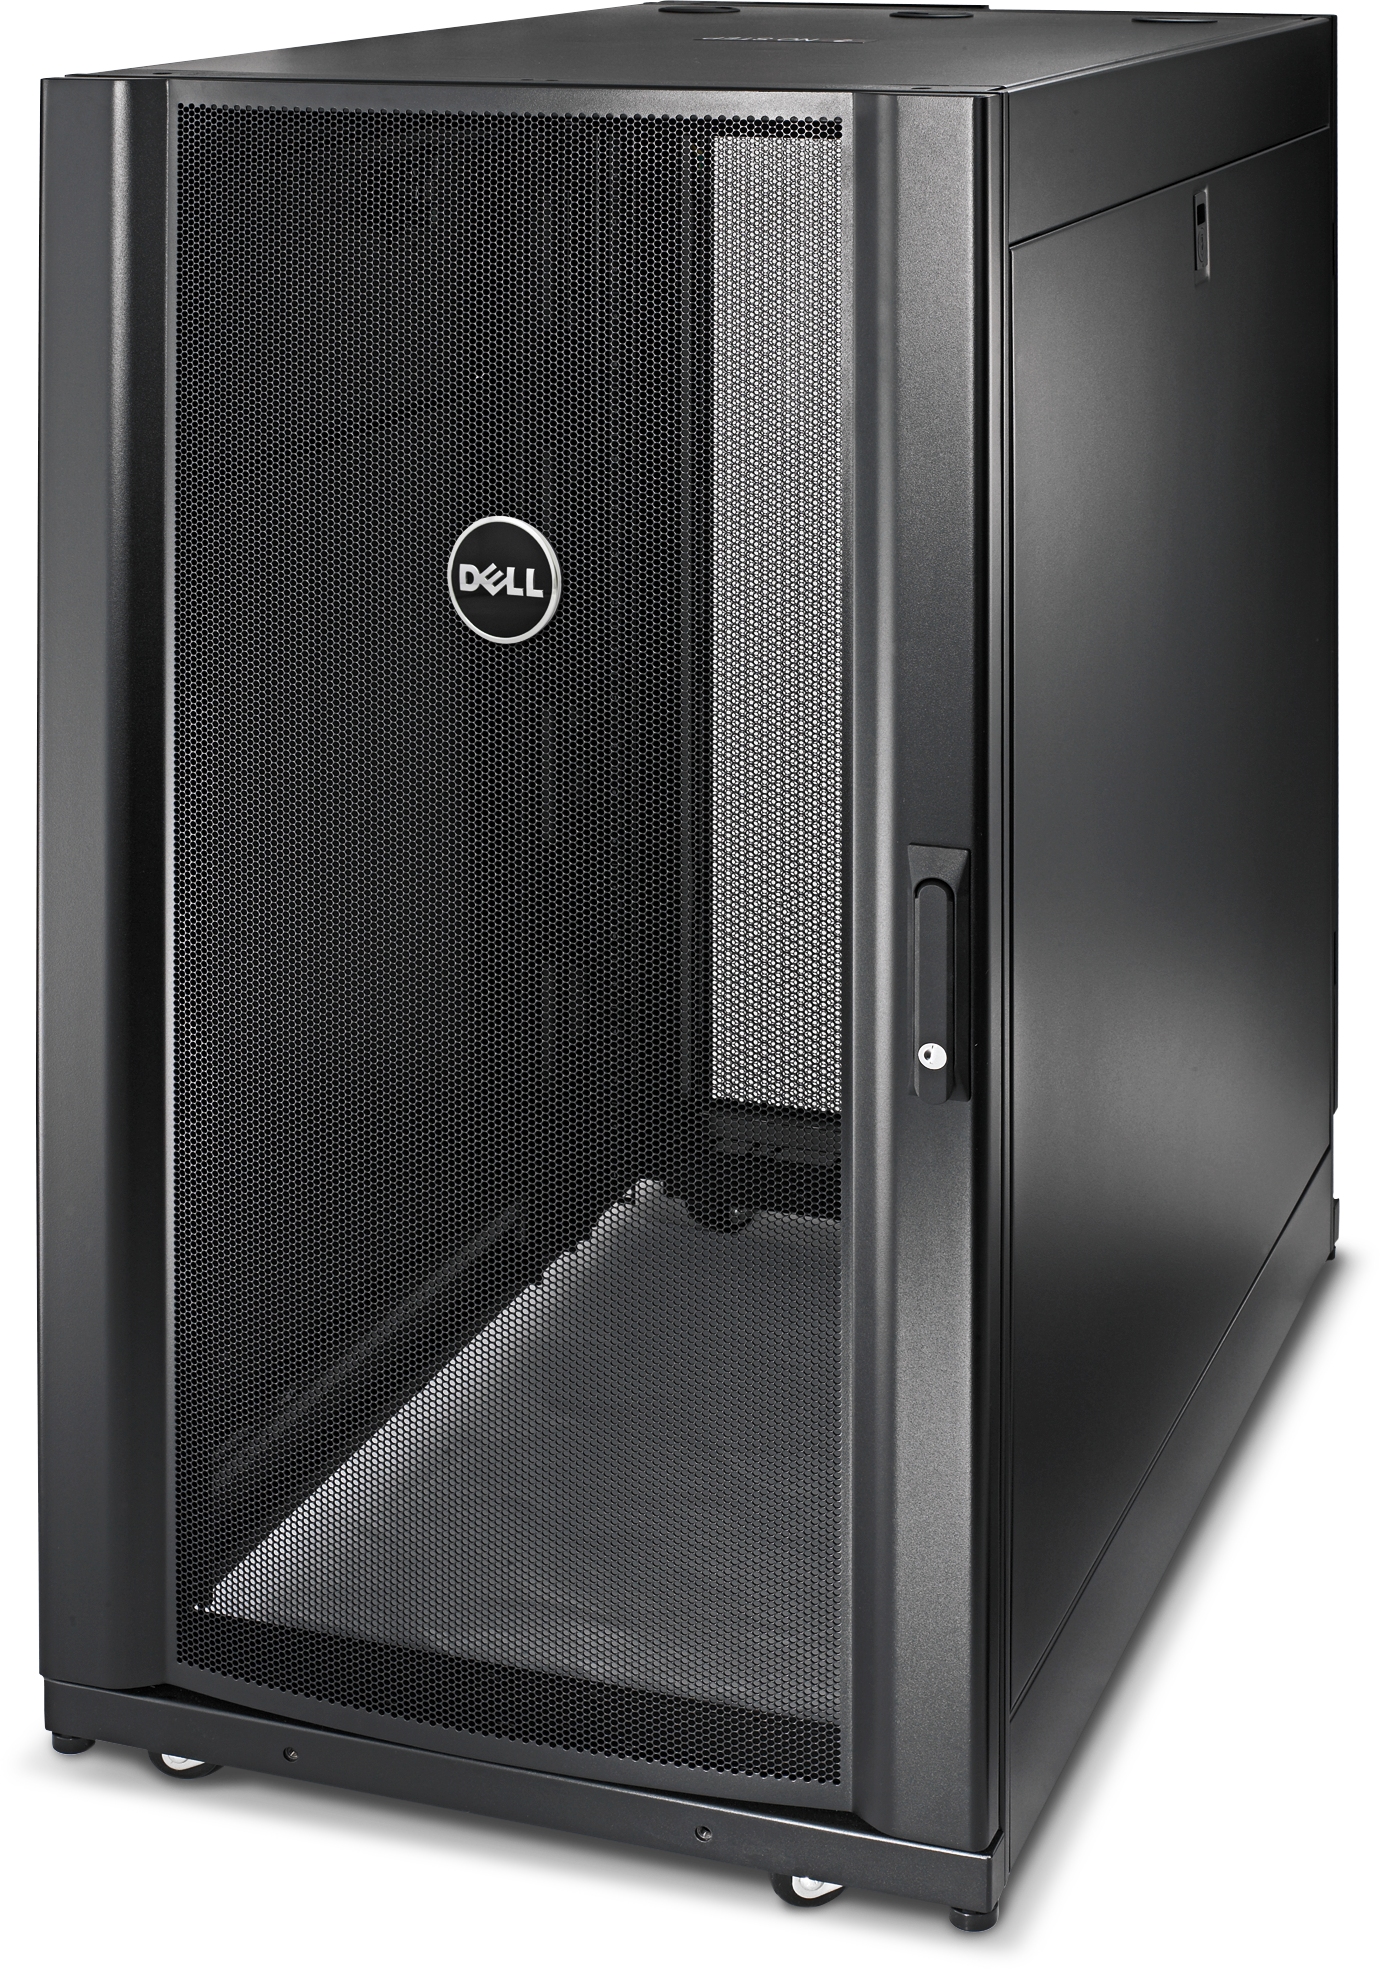 Dell Rack Enclosures